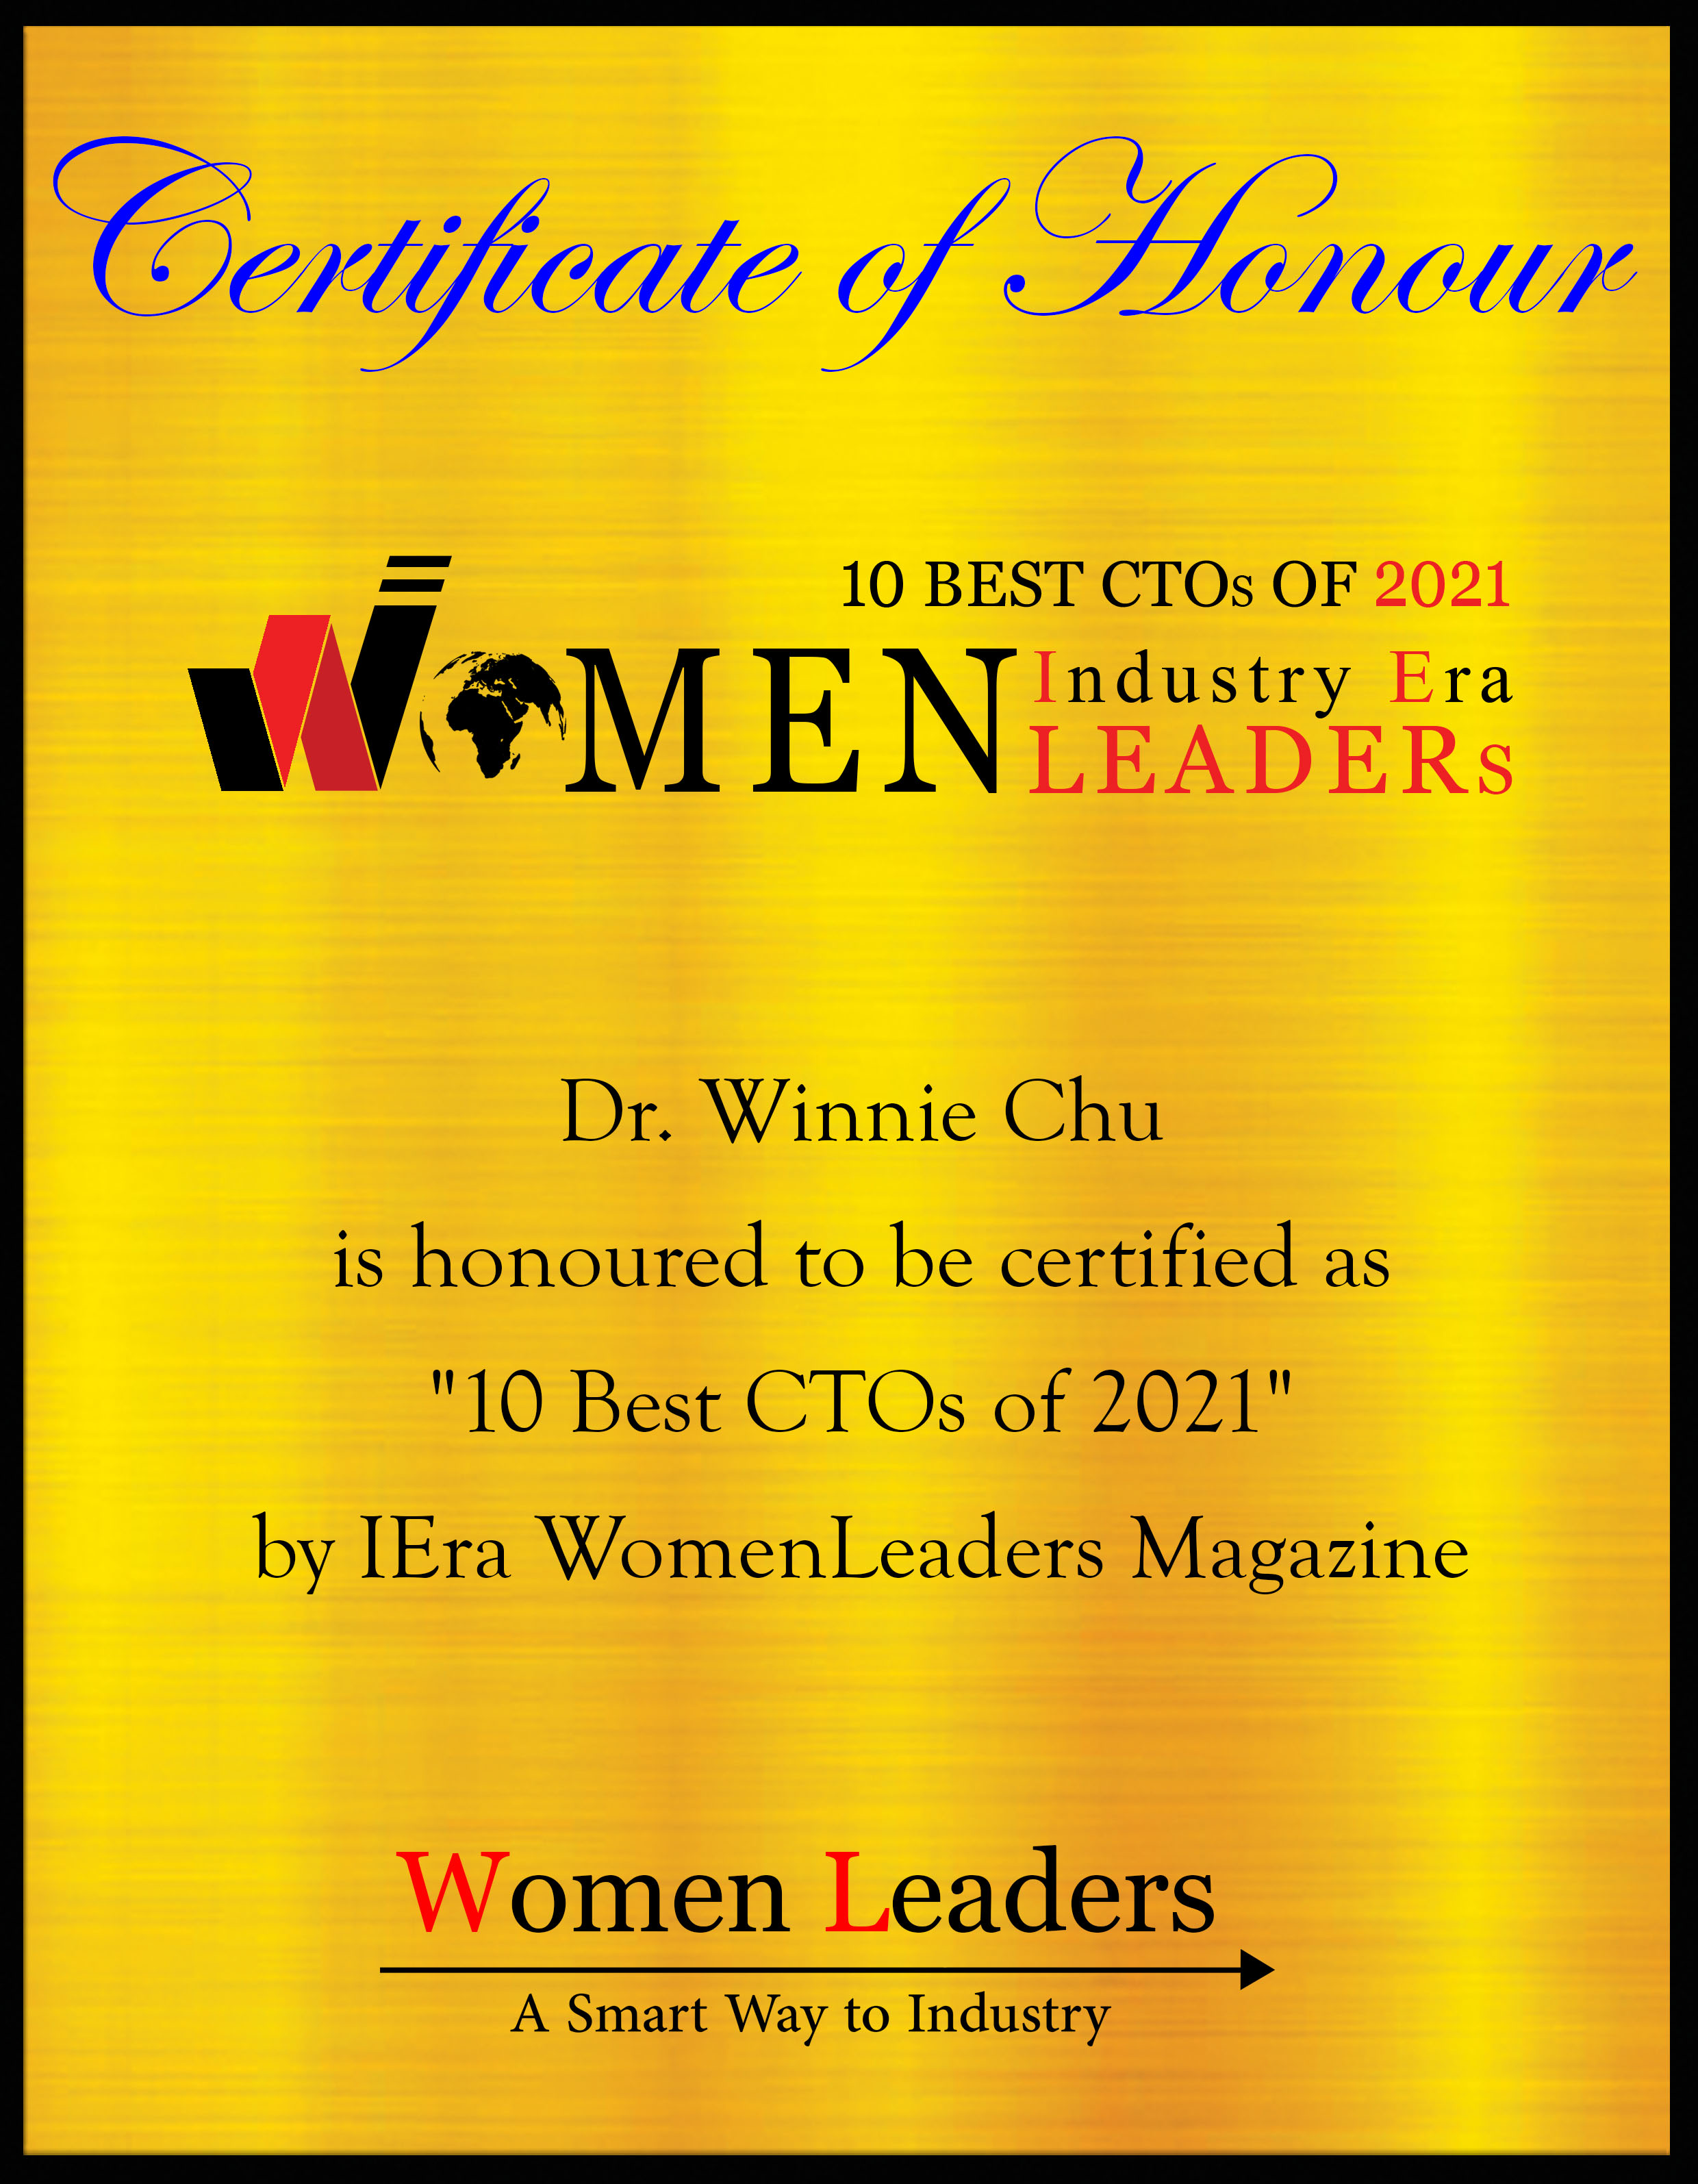 Dr. Winnie Chu, founder & CTO of Nanozen